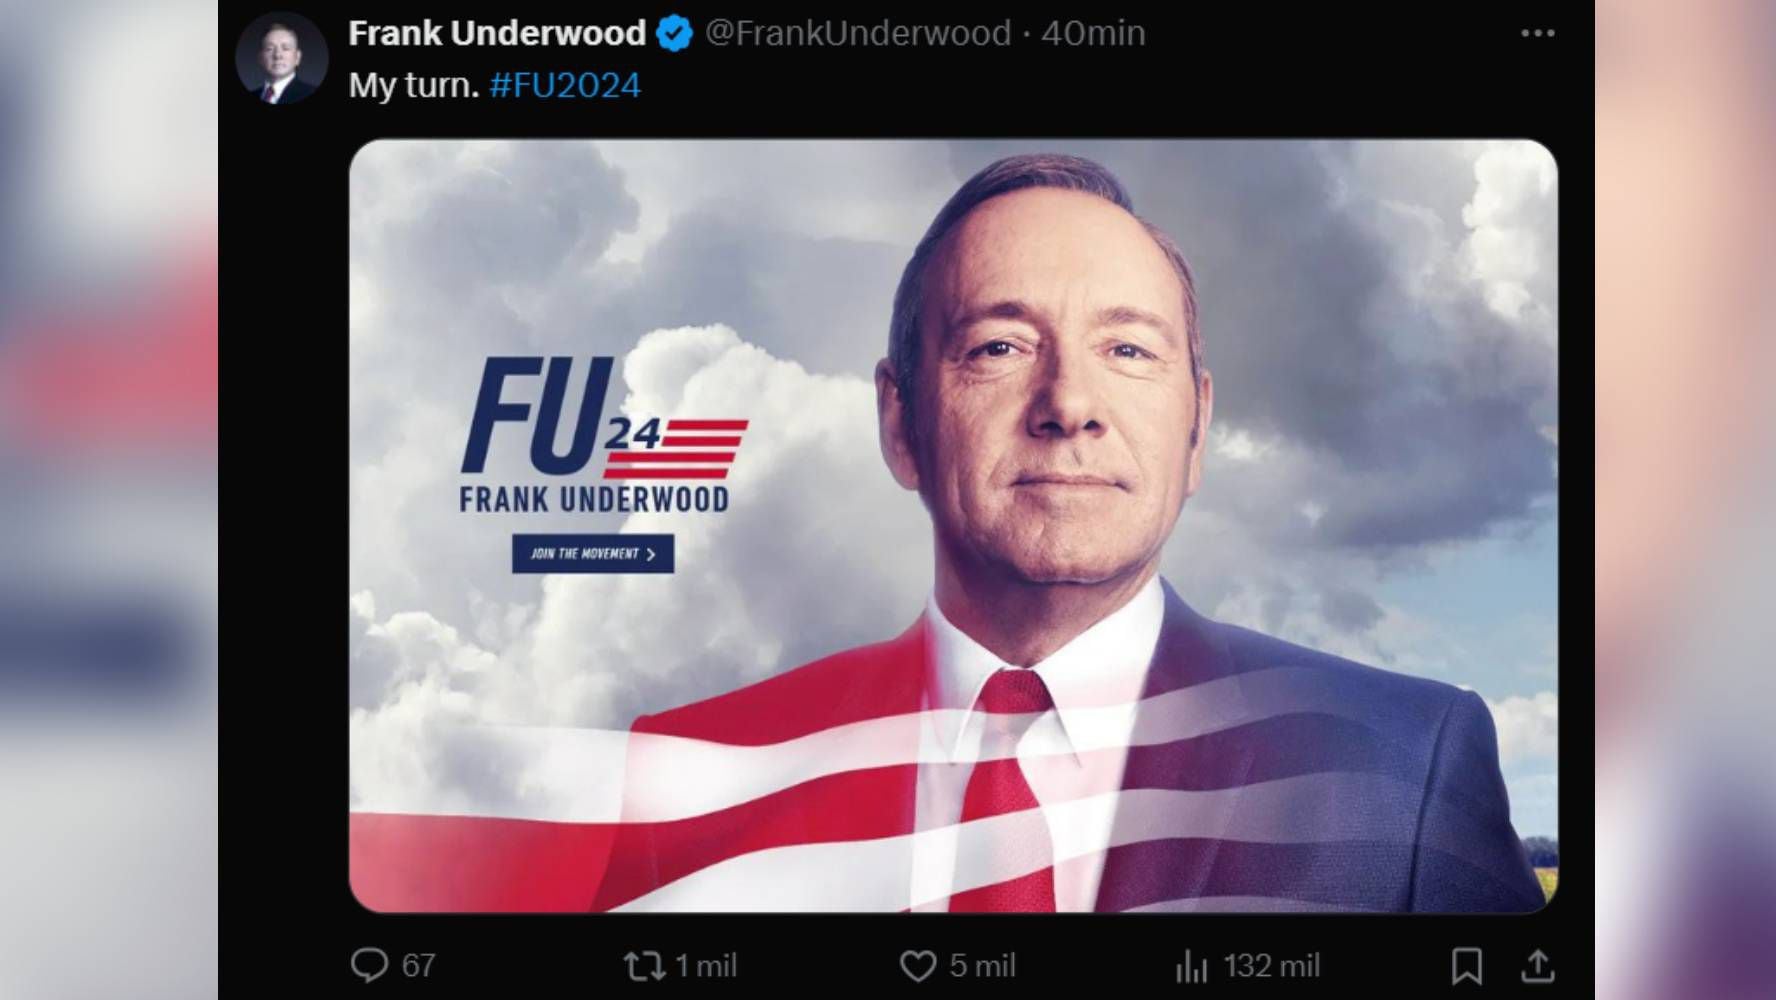 Frank Underwood, personaje ficticio de House of Cards, interpretado por Kevin Spacey, se propuso para candidato presidencial.